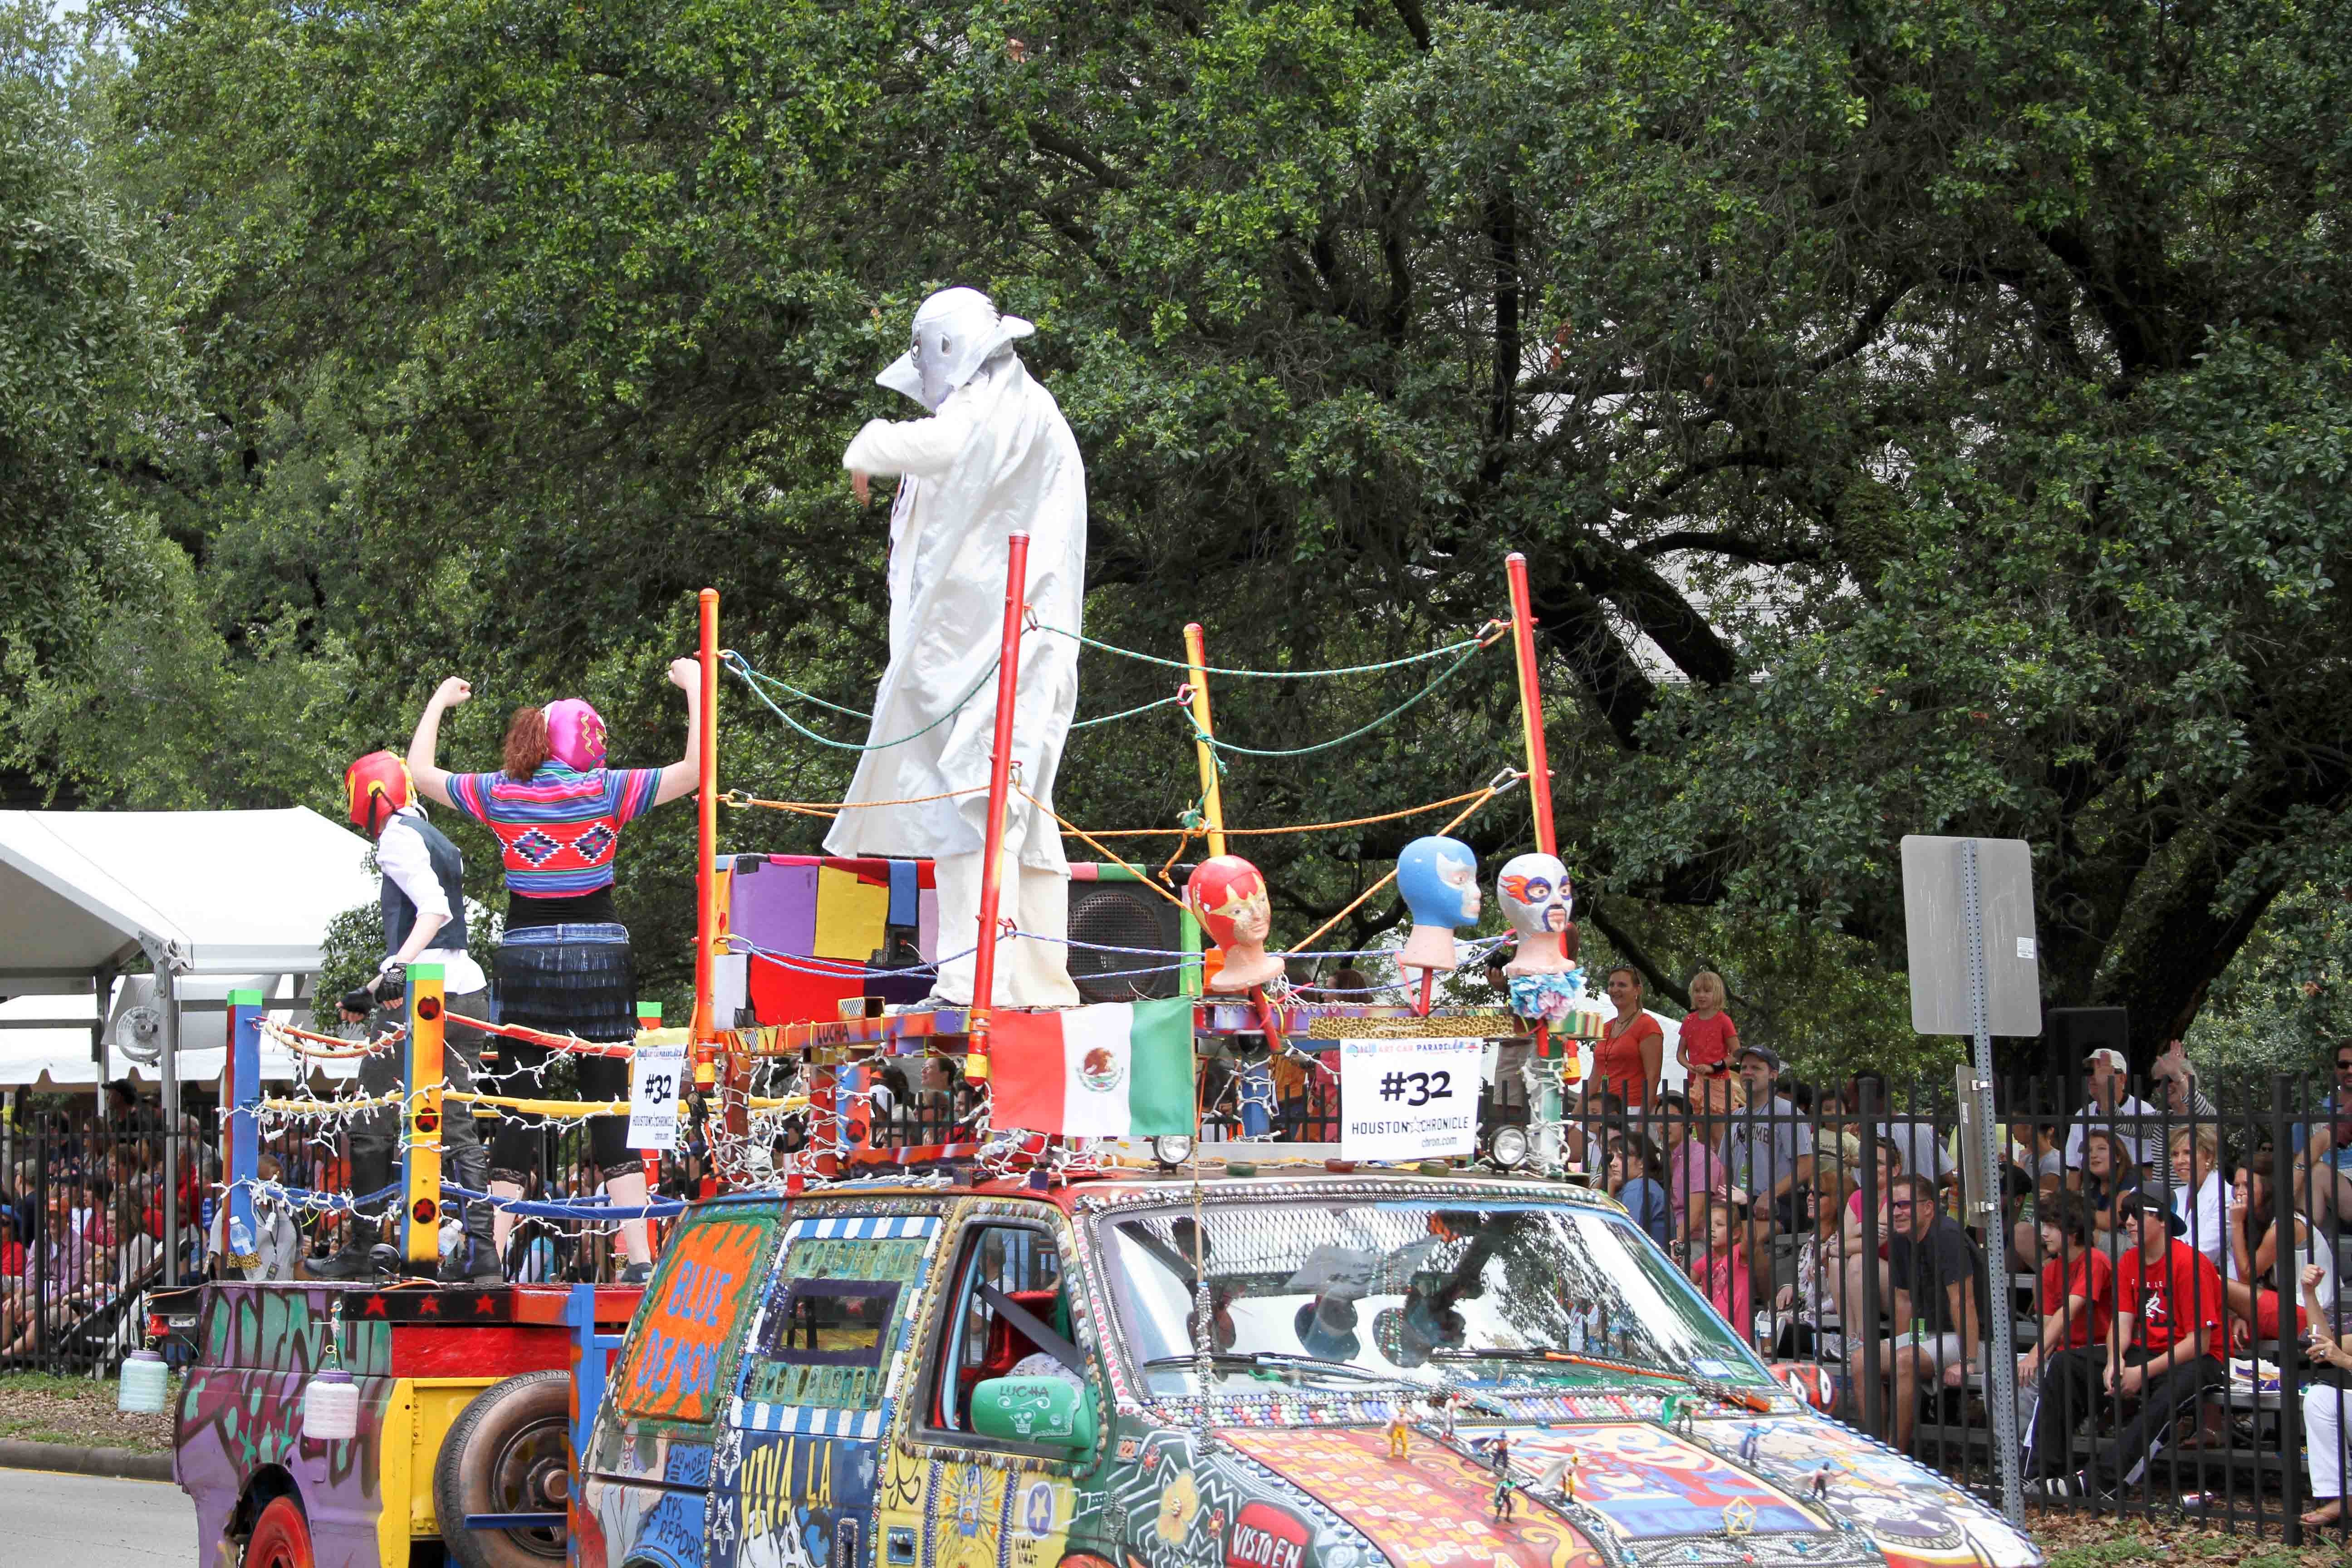 Houston Art Car Parade - 2012